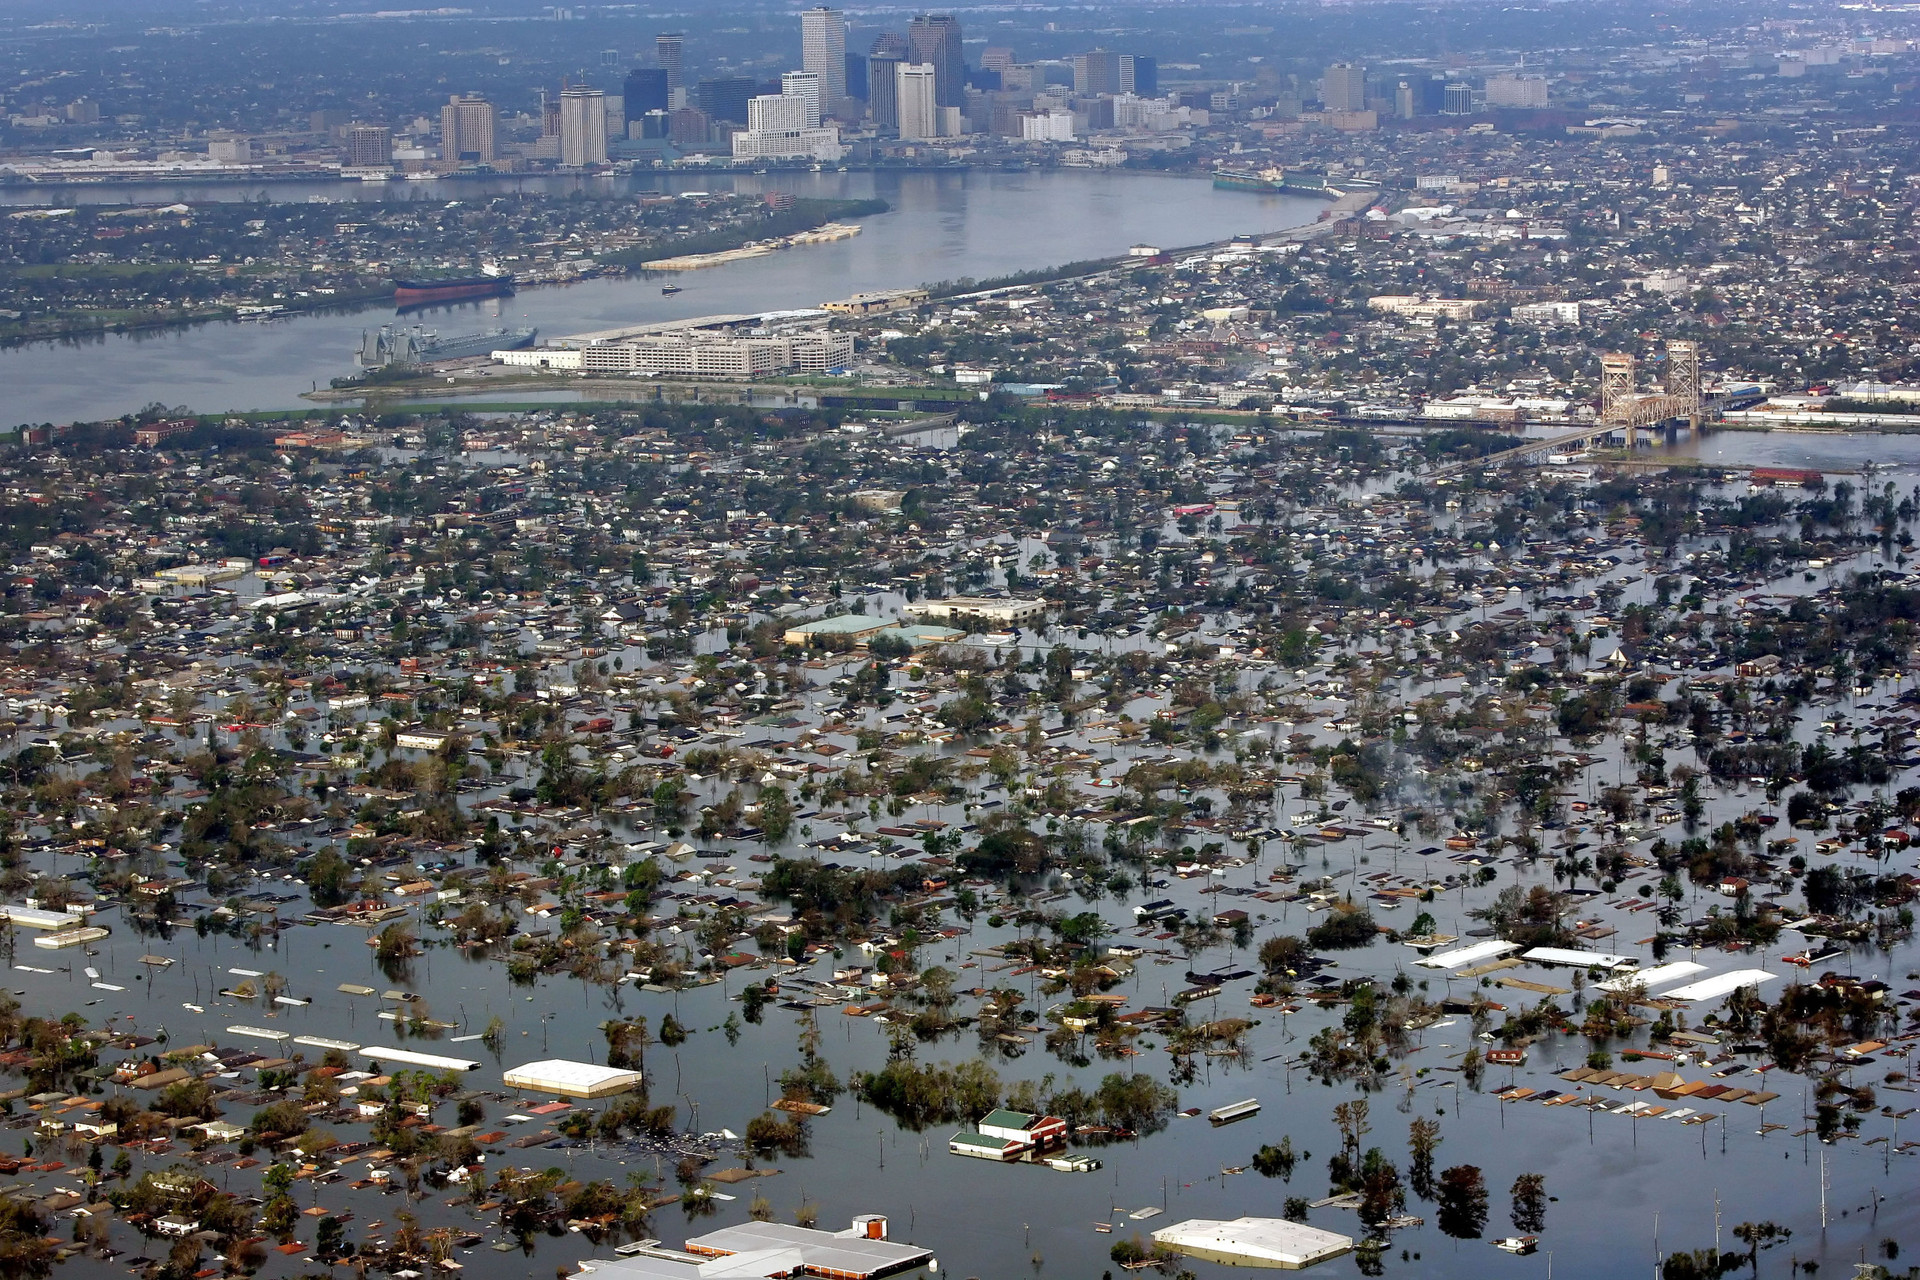 Siêu bão Katrina nhấn chìm nước Mỹ năm 2005. Ảnh: WBUR.